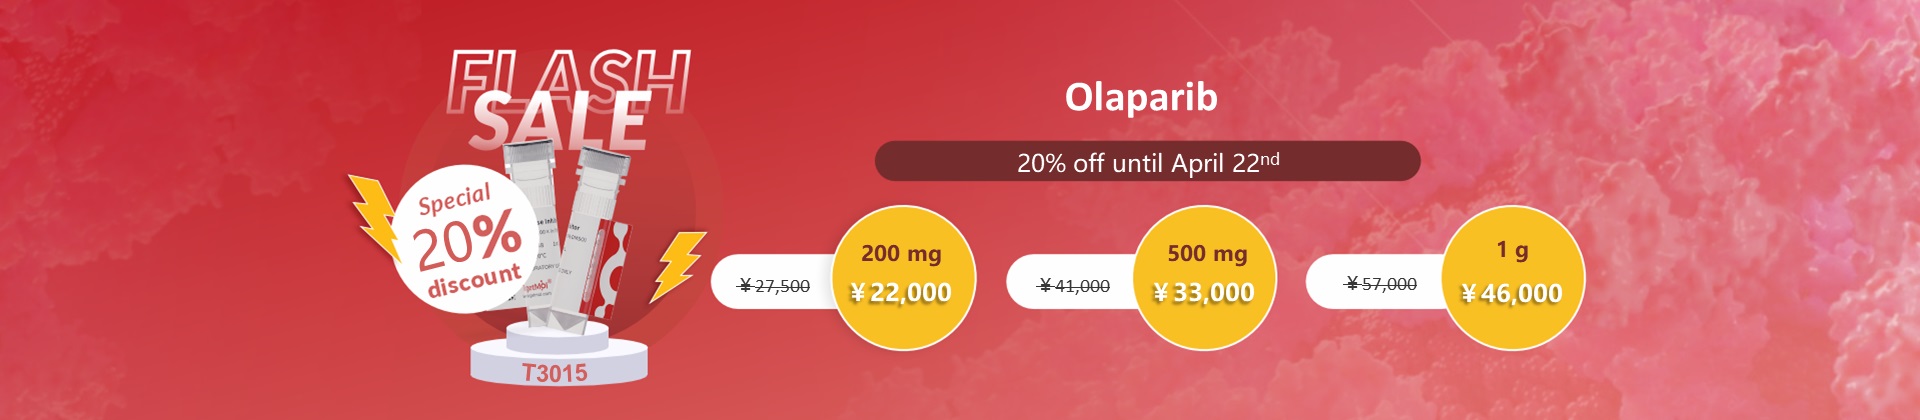 Olaparib 80% discount